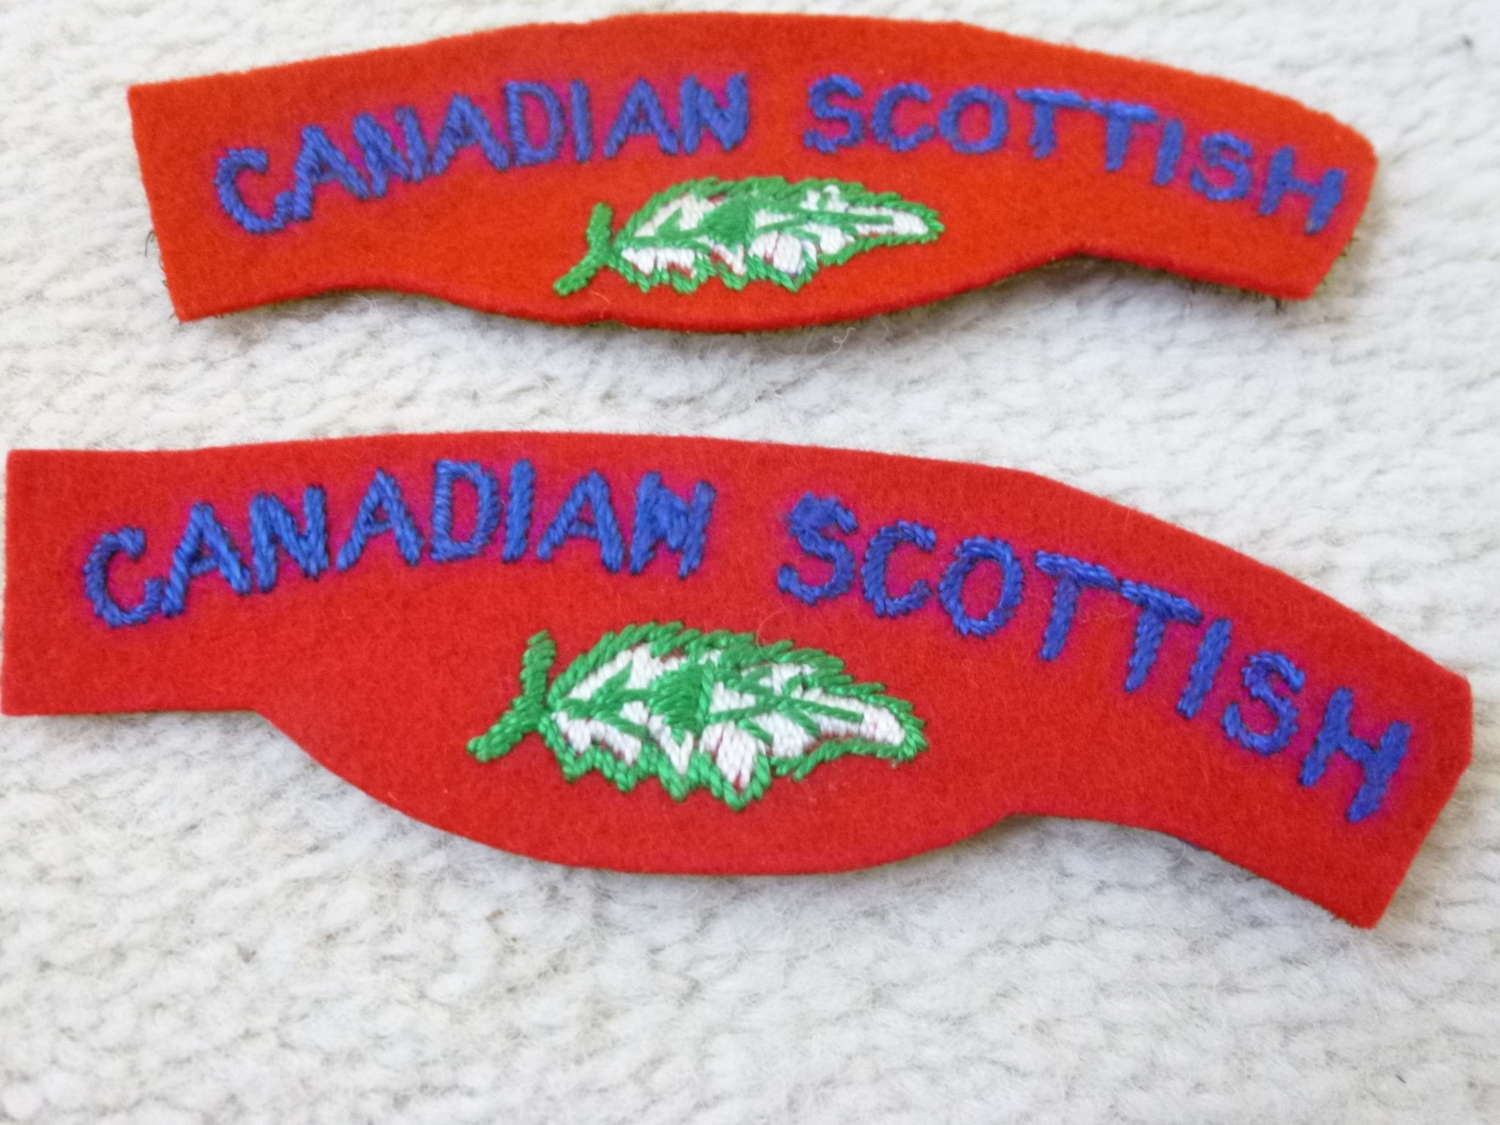 Canadian Scottish regimental shoulder titles